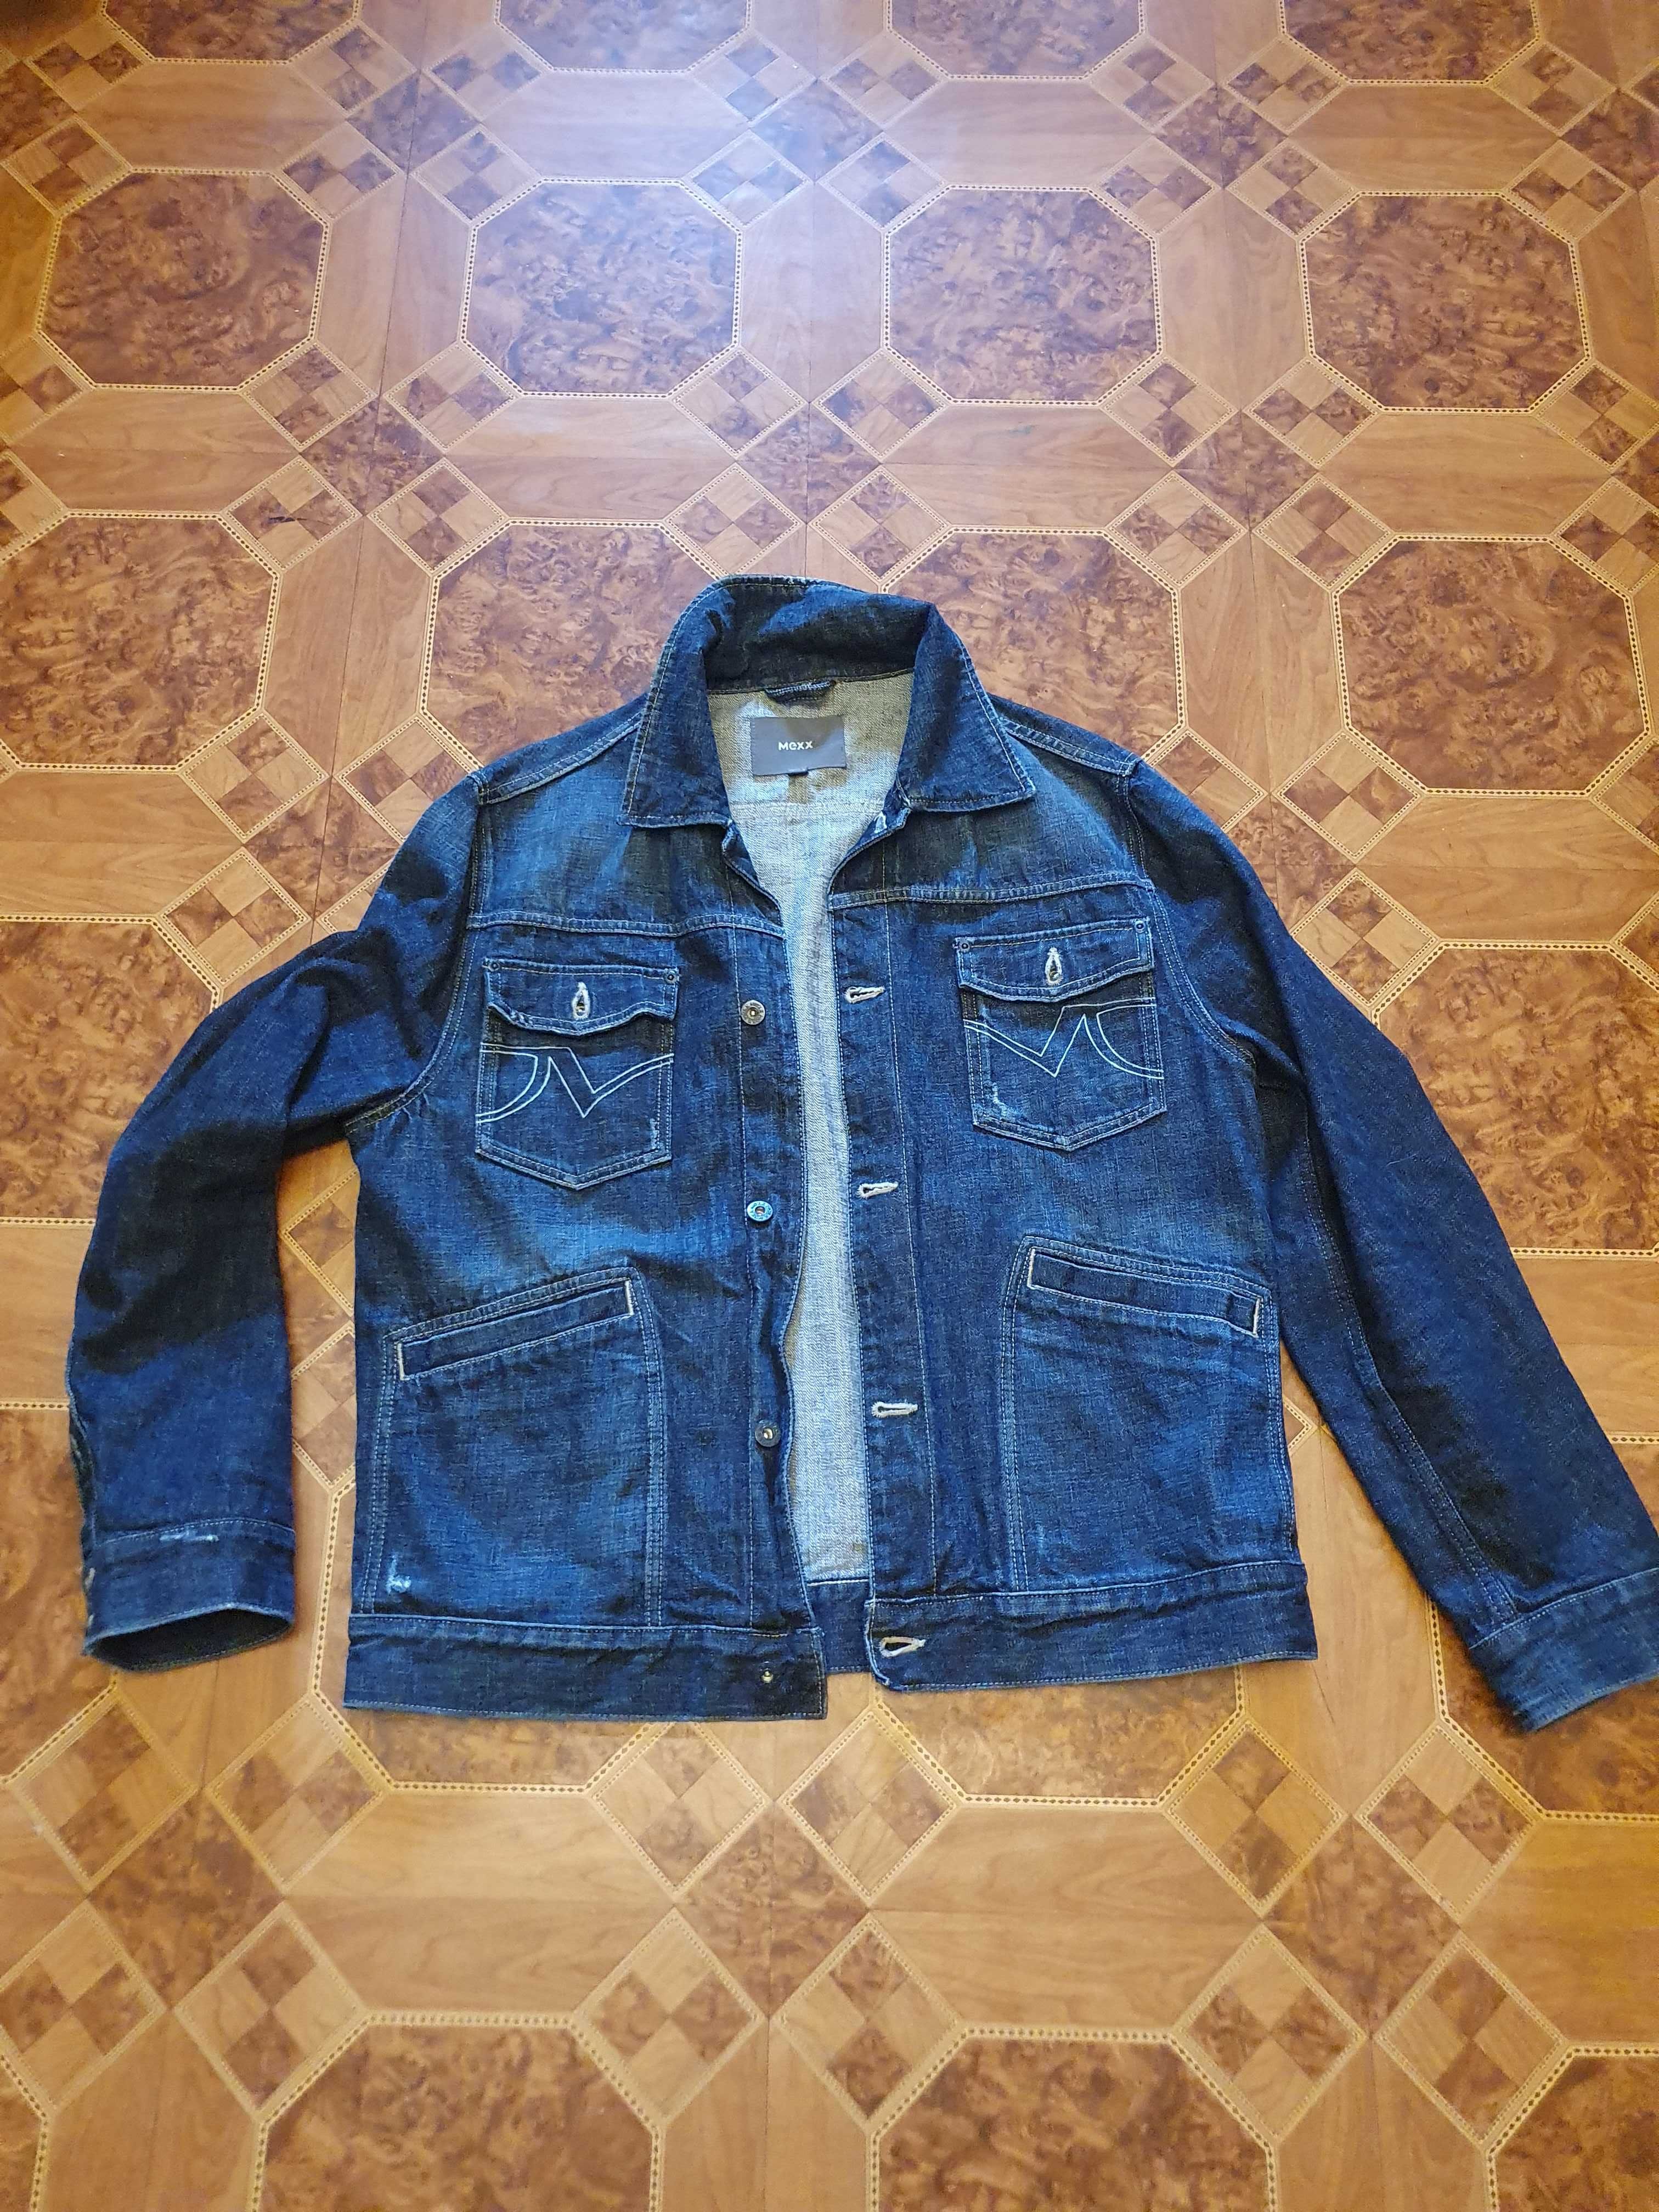 Джинсовая синяя куртка пиджак,джинсовый хлопок, размерXL